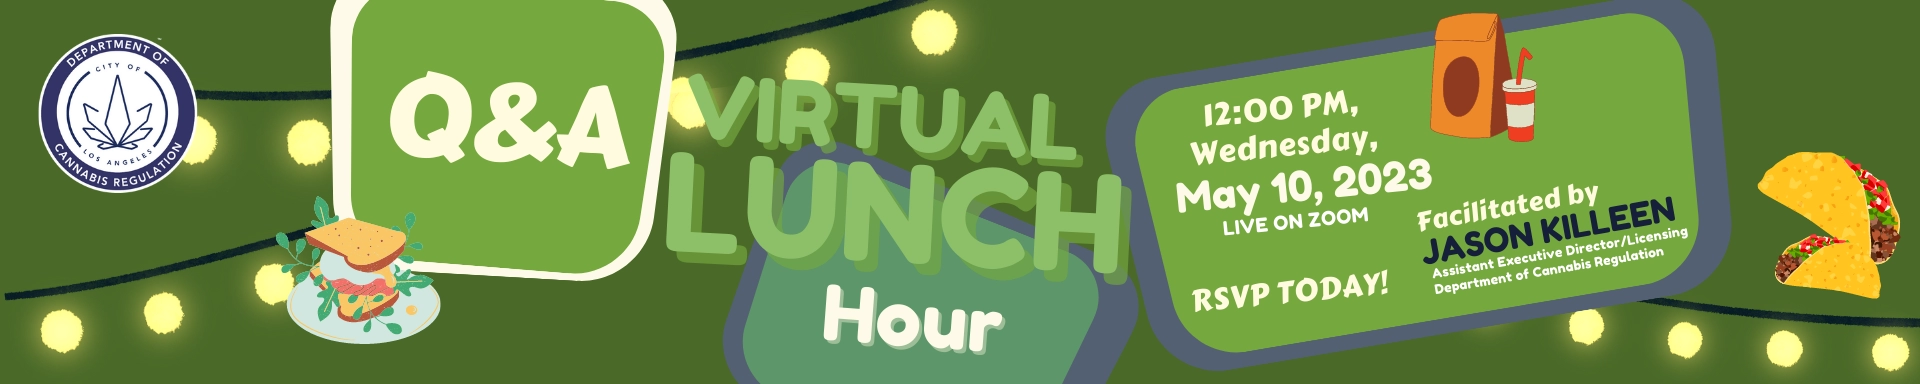 Q & A Virtual Lunch Hour